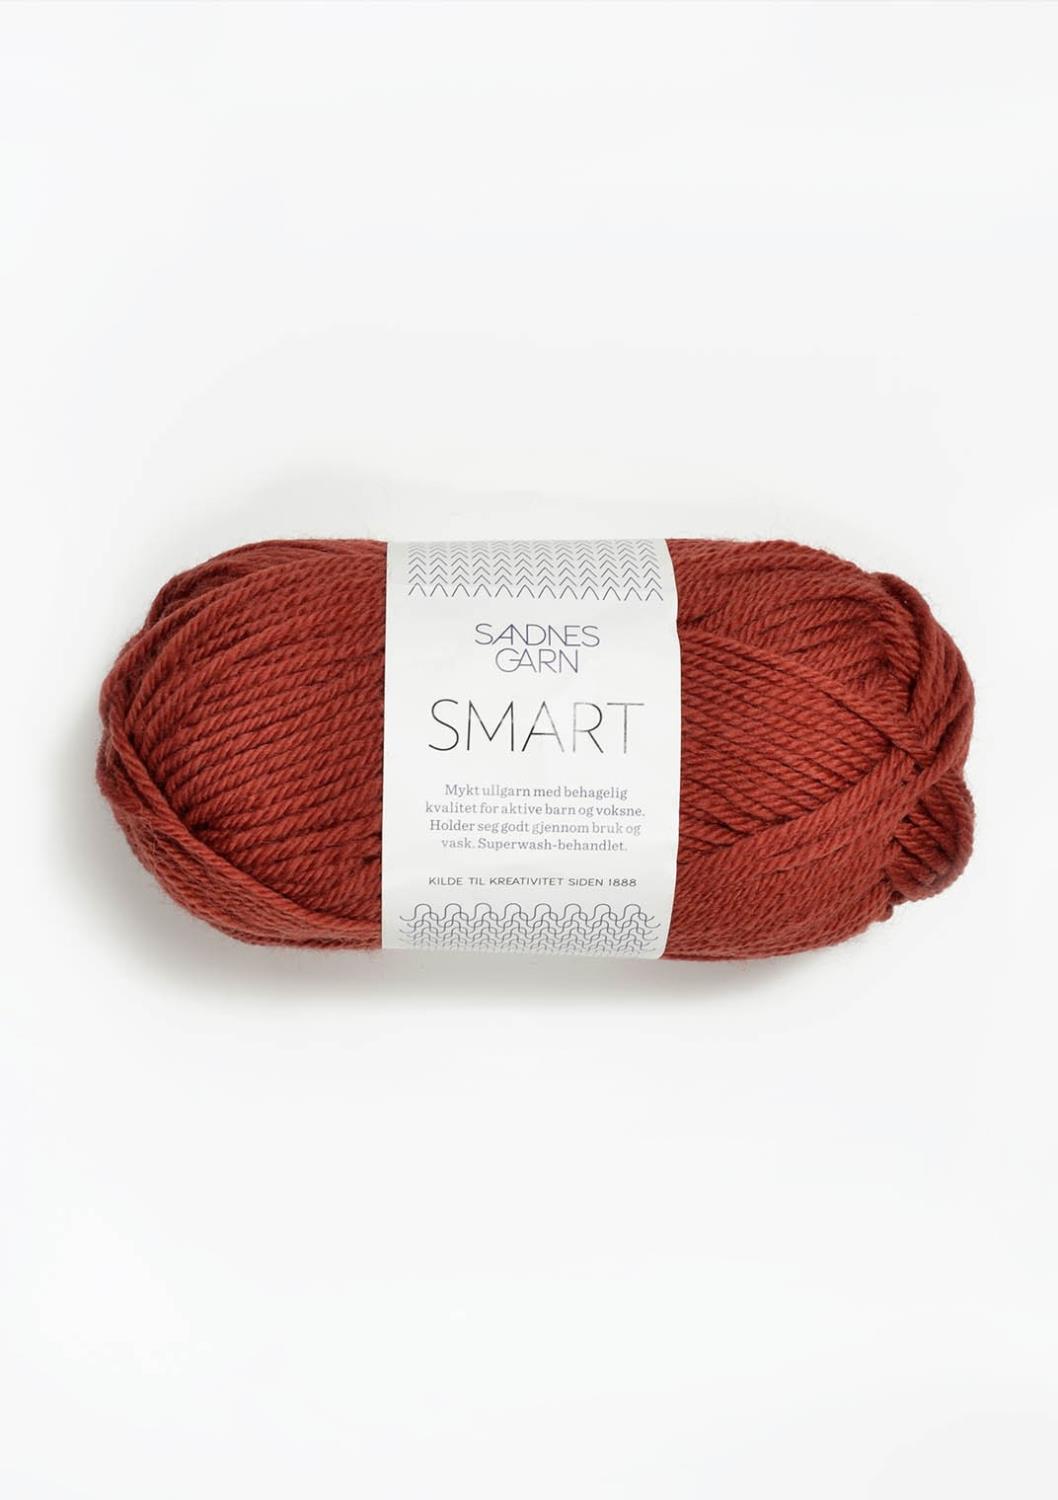 Smart Sandnes 4036 - Brent Terrakotta